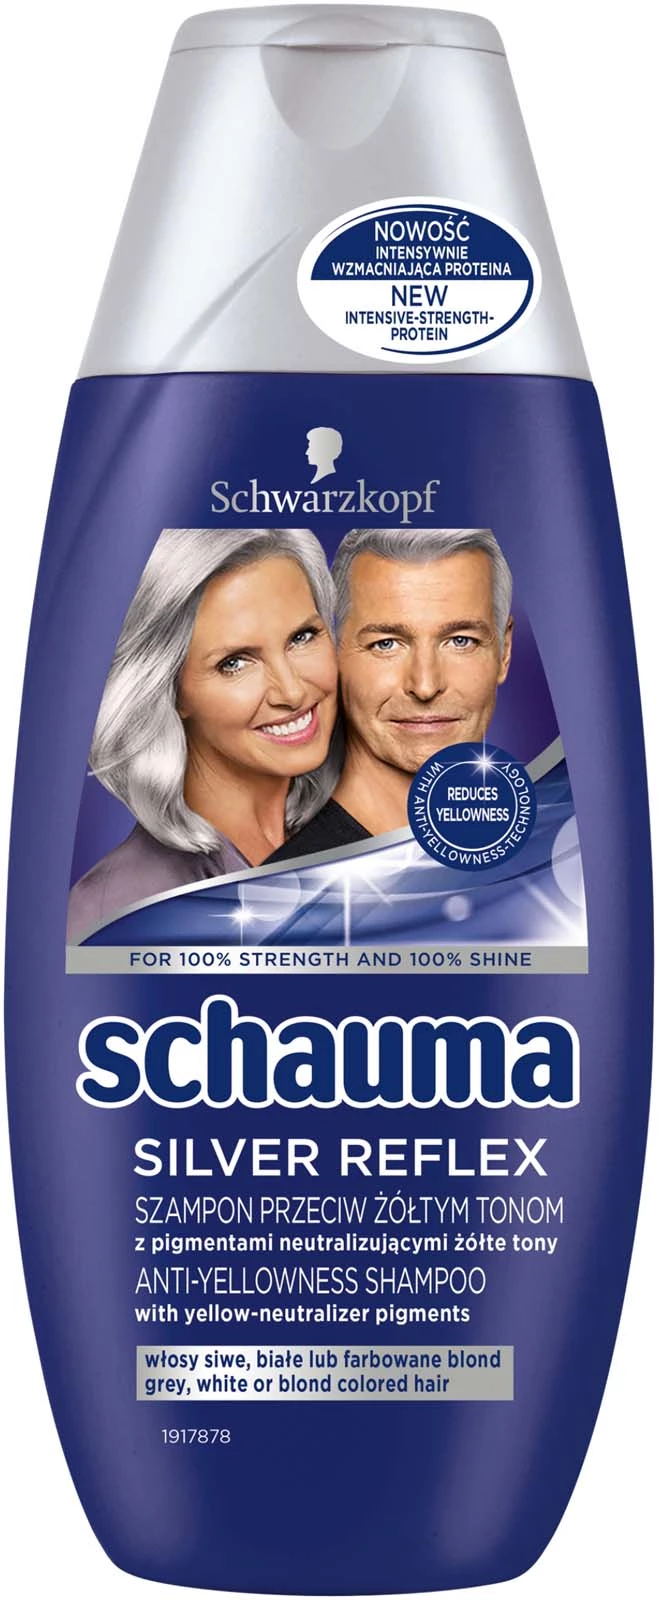 szampon dla kobiet do siwych